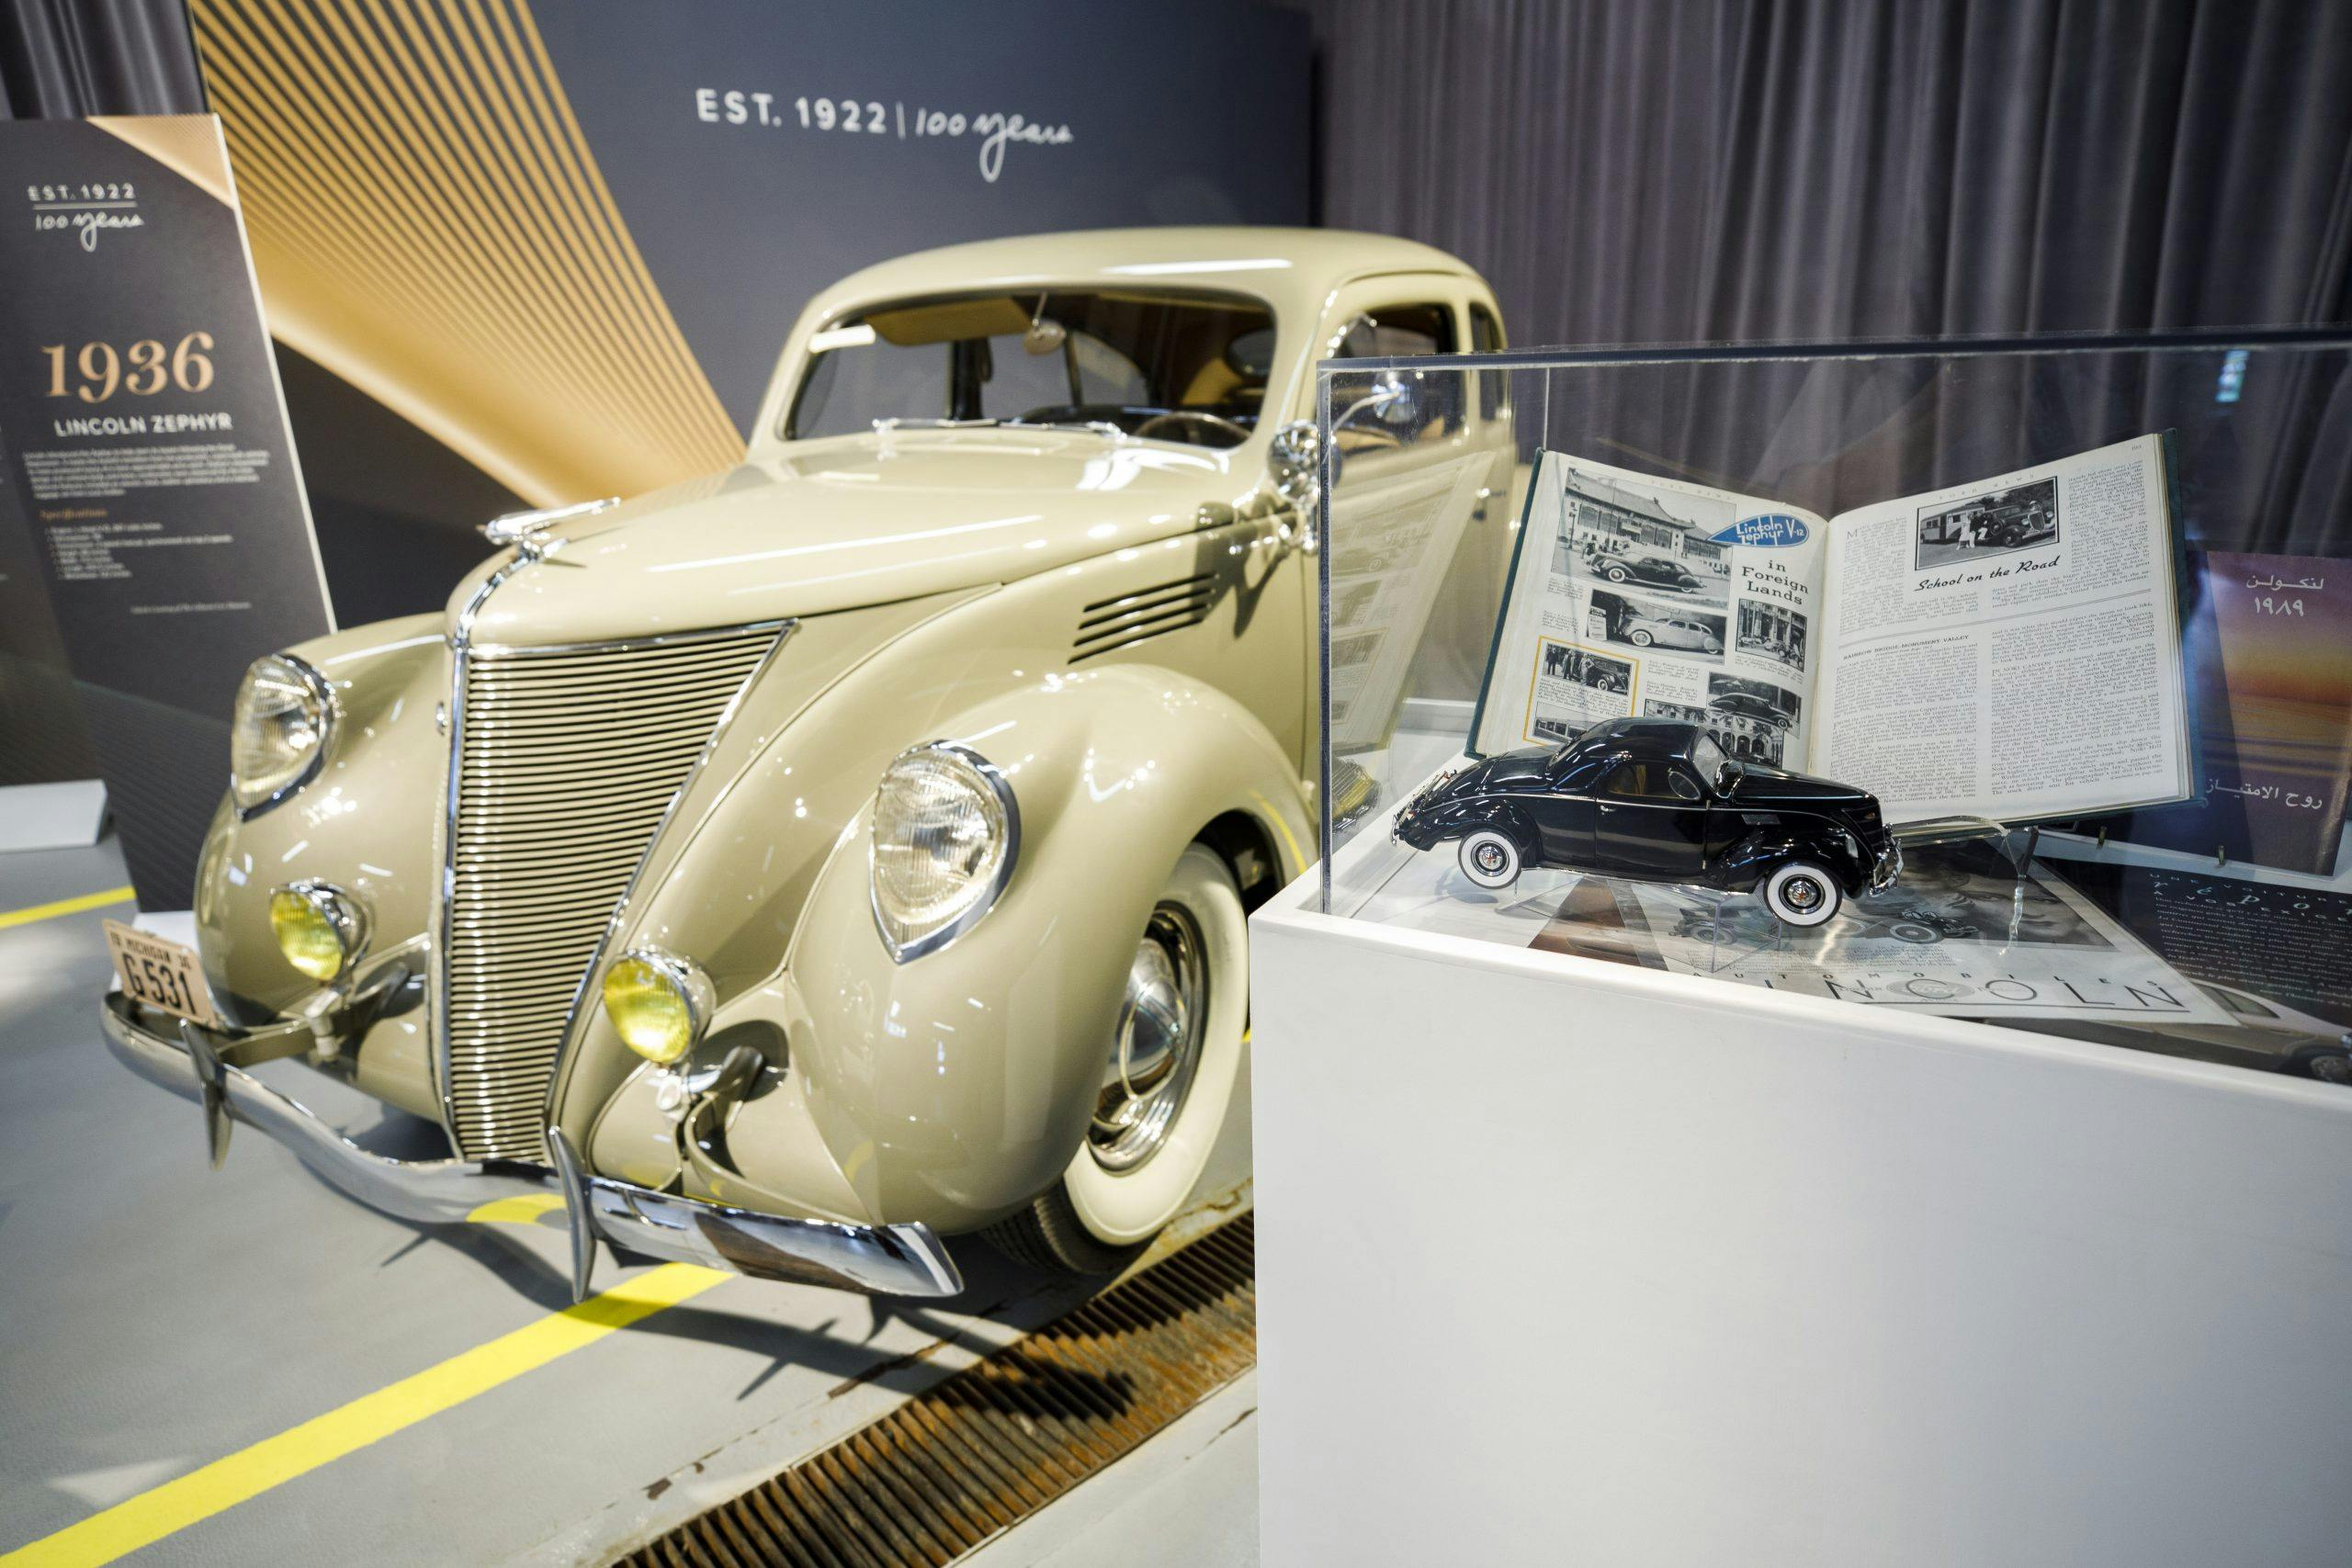 1936 Lincoln Zephyr 2 door sedan